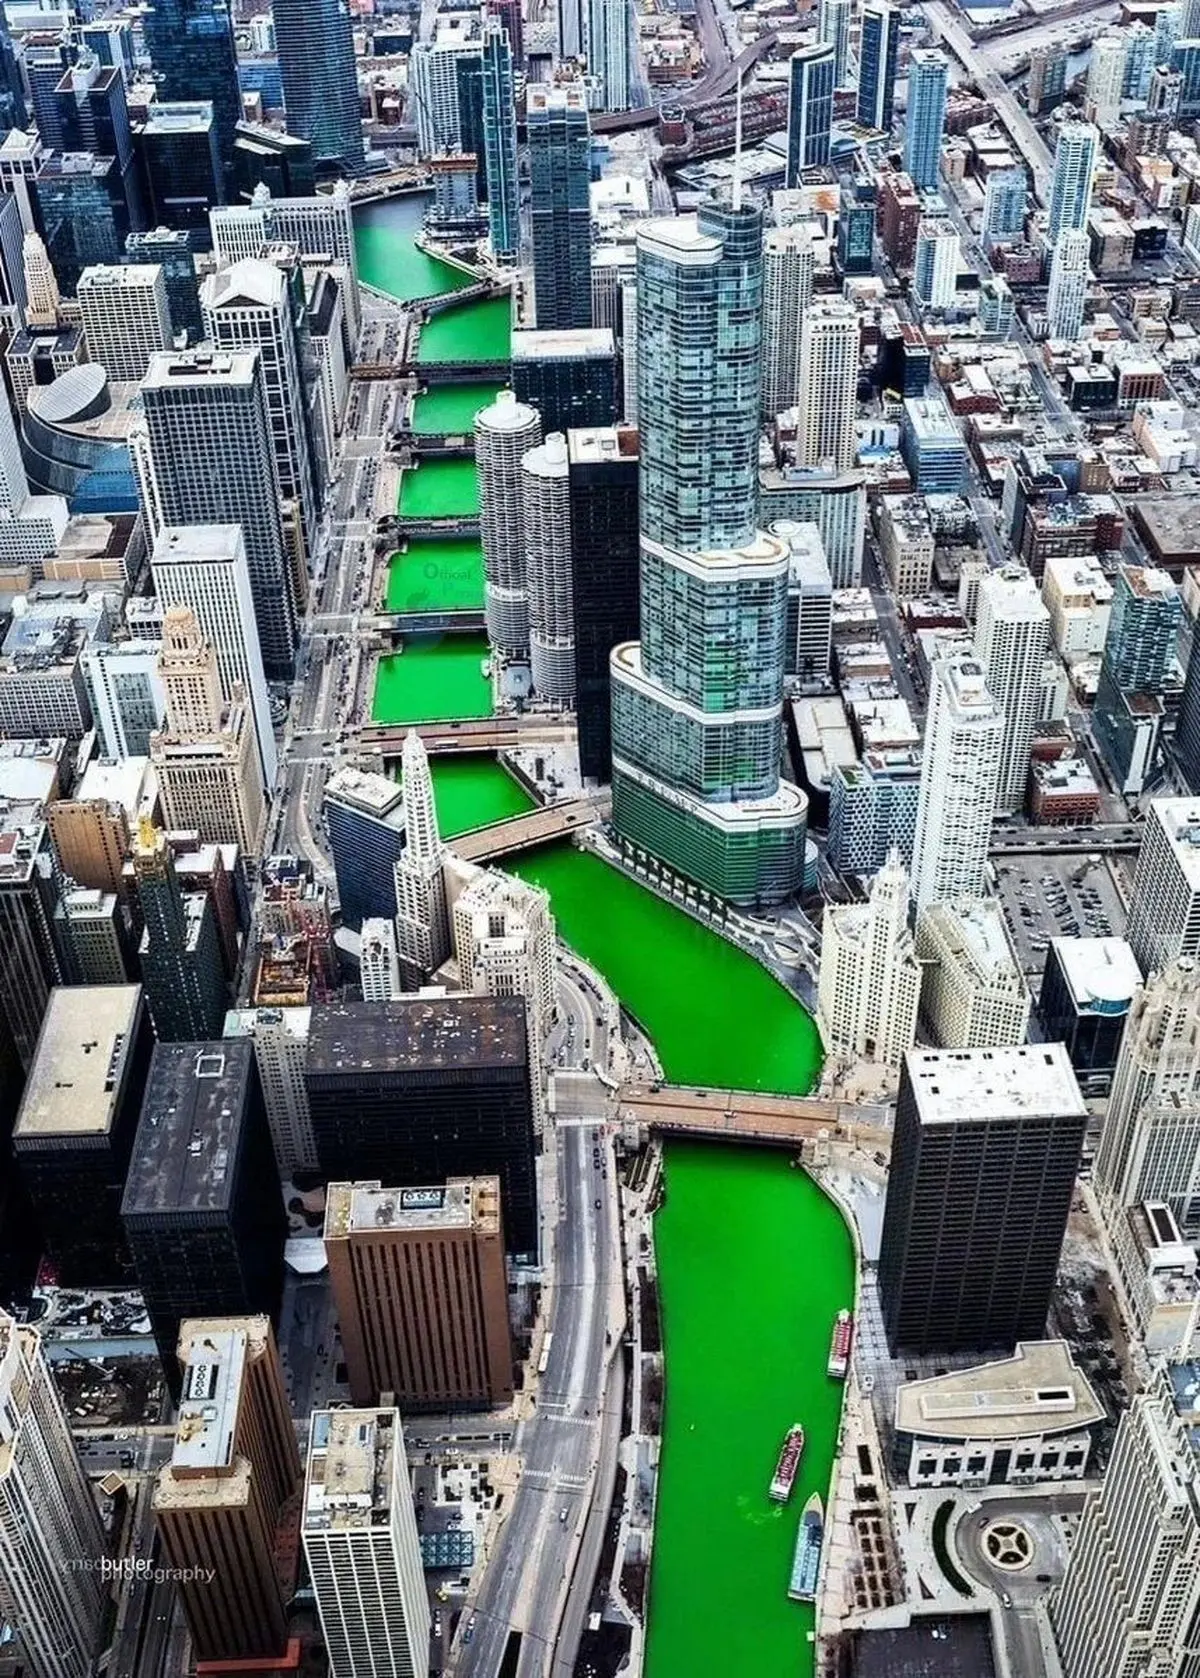 رودخانه شیکاگو به مناسبت سدپاتریک به رنگ سبز درآمد ! + عکس